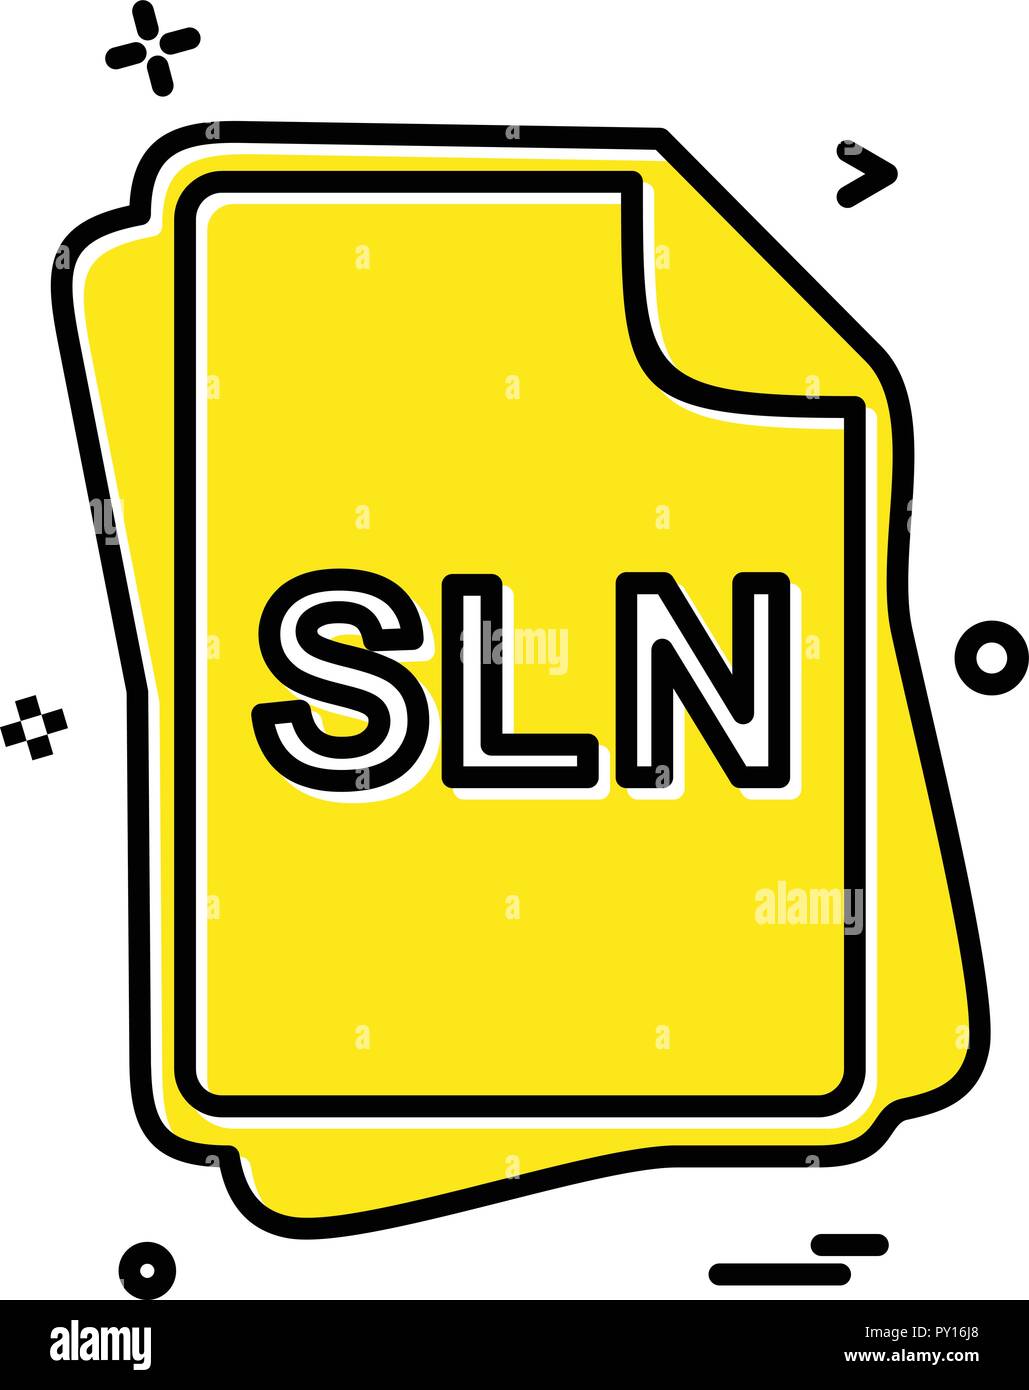 SLN file type icon design vector Stock Vector